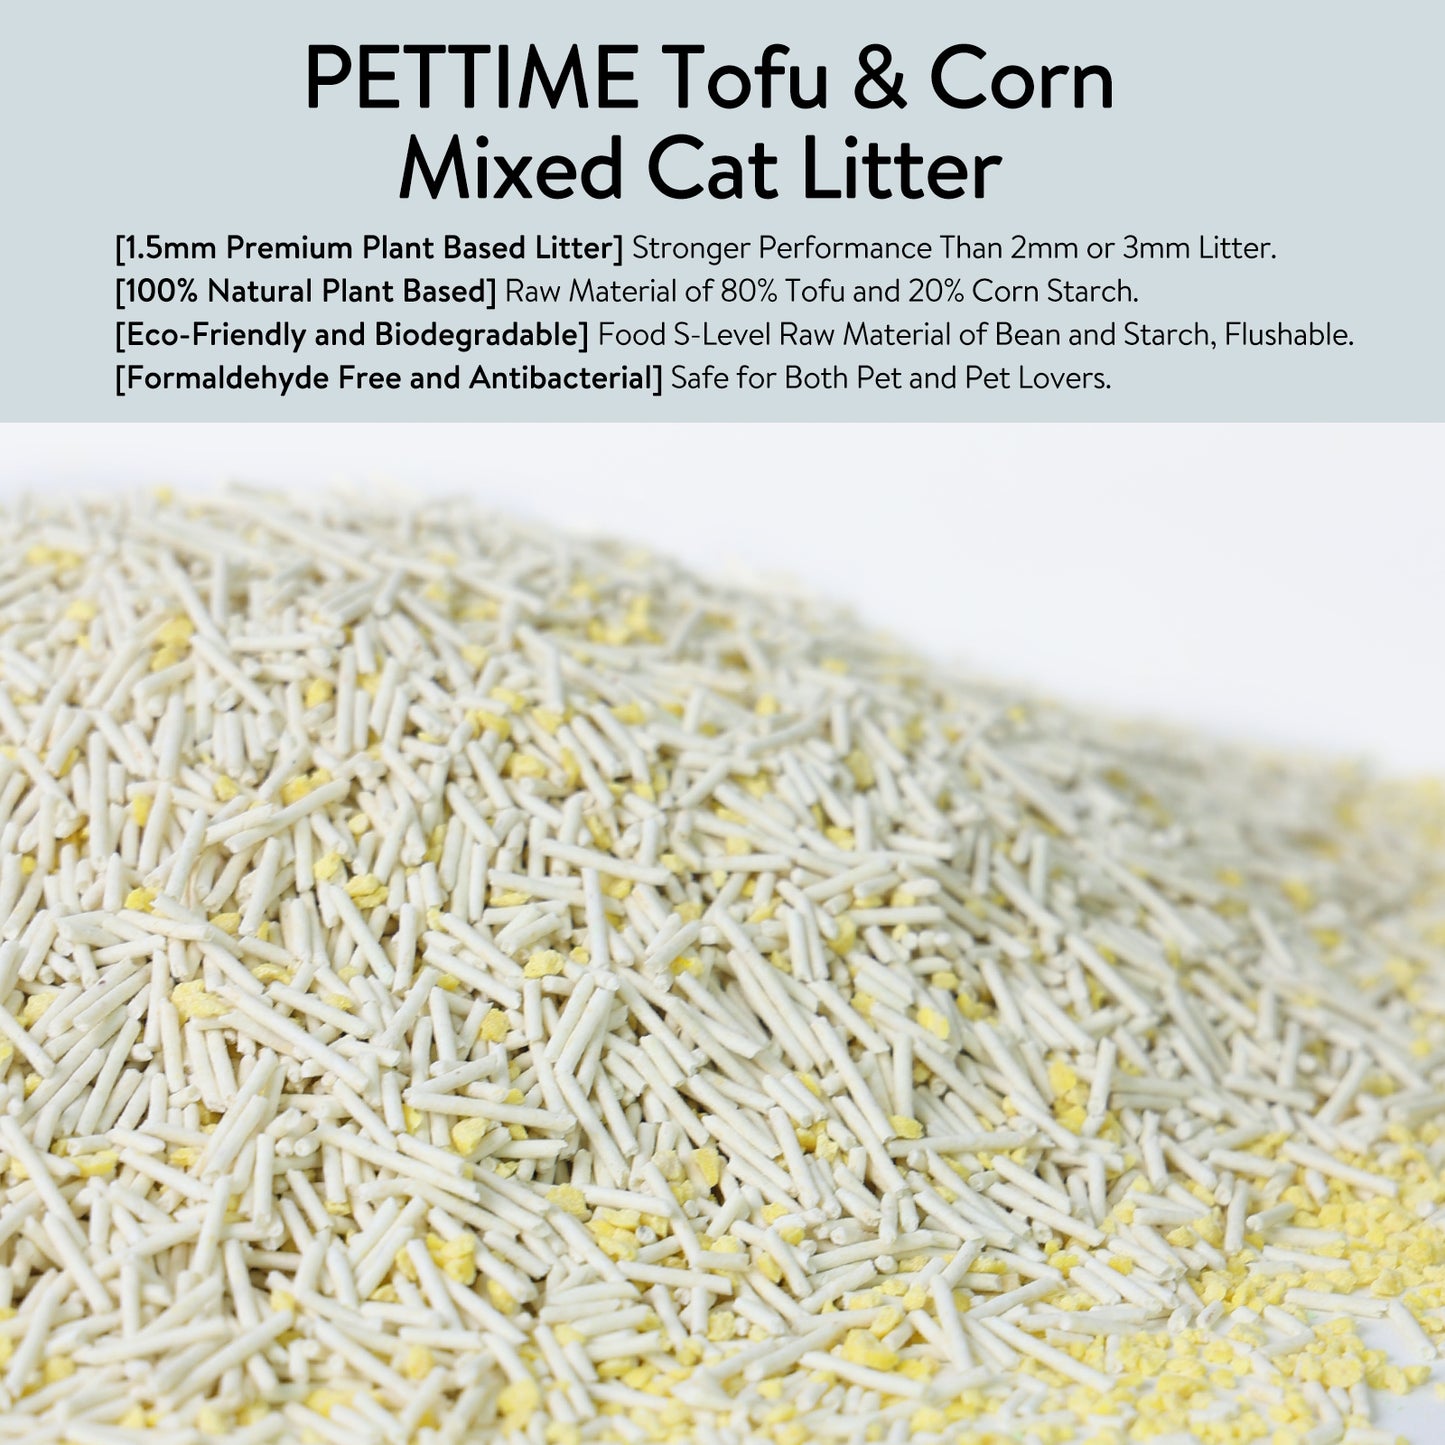 PETTIME Tofu & Corn Cat Litter